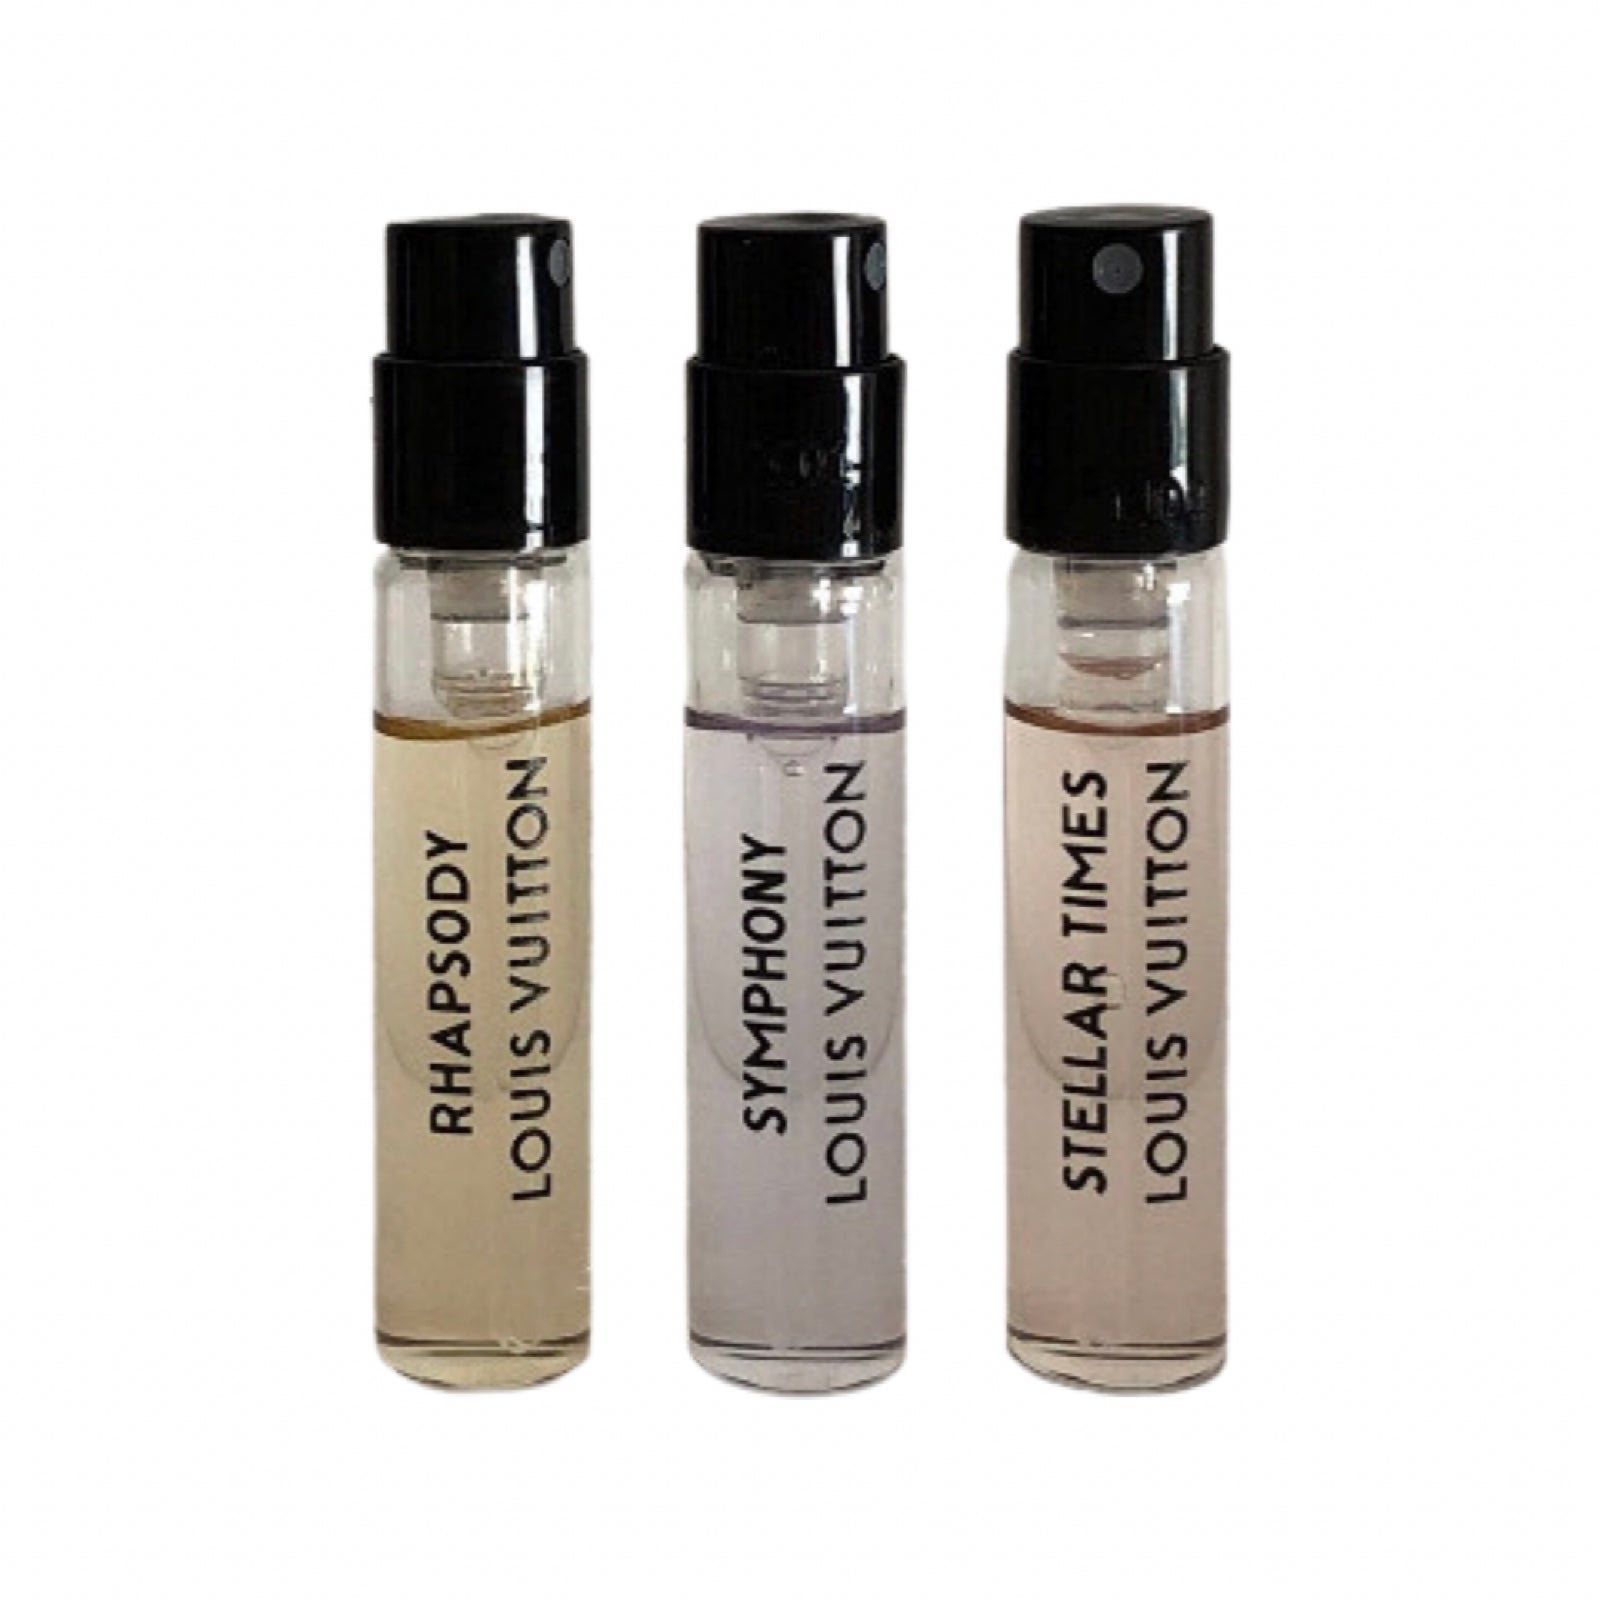 Louis Vuitton Stellar Times Extrait de Parfum 2ml official scent sample